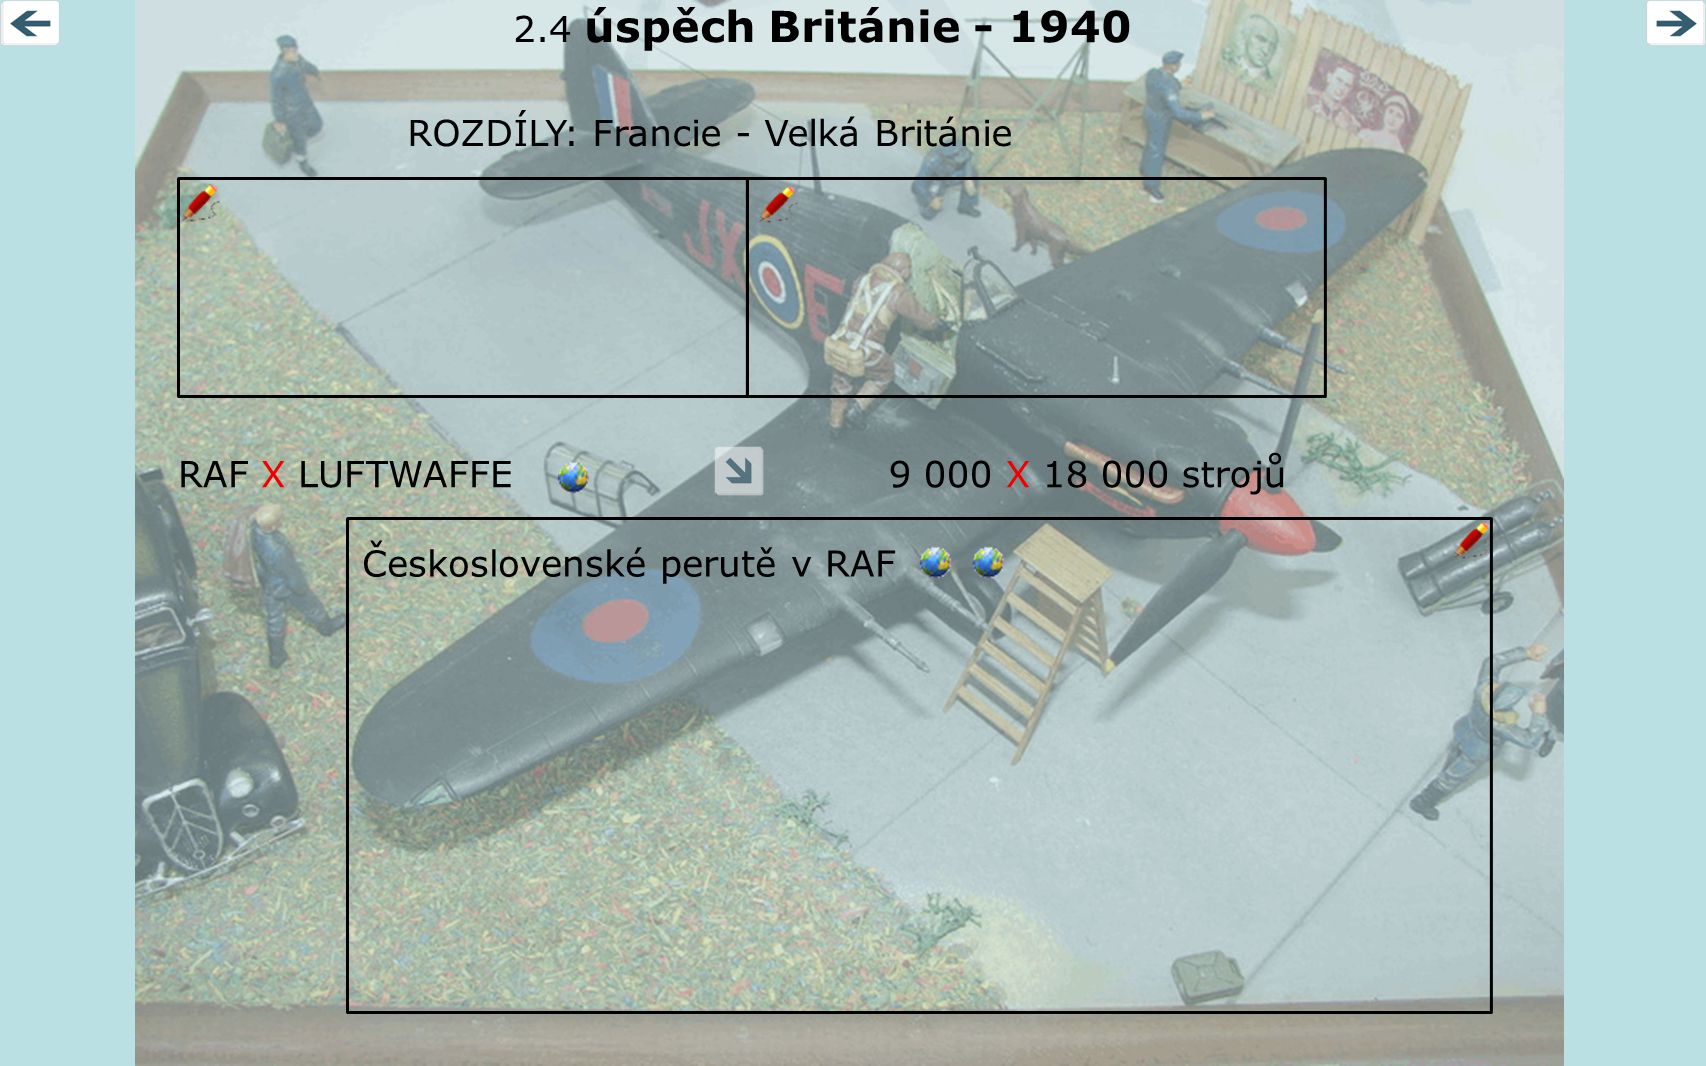 2.4 úspěch Británie ROZDÍLY: Francie - Velká Británie. RAF X LUFTWAFFE X strojů.